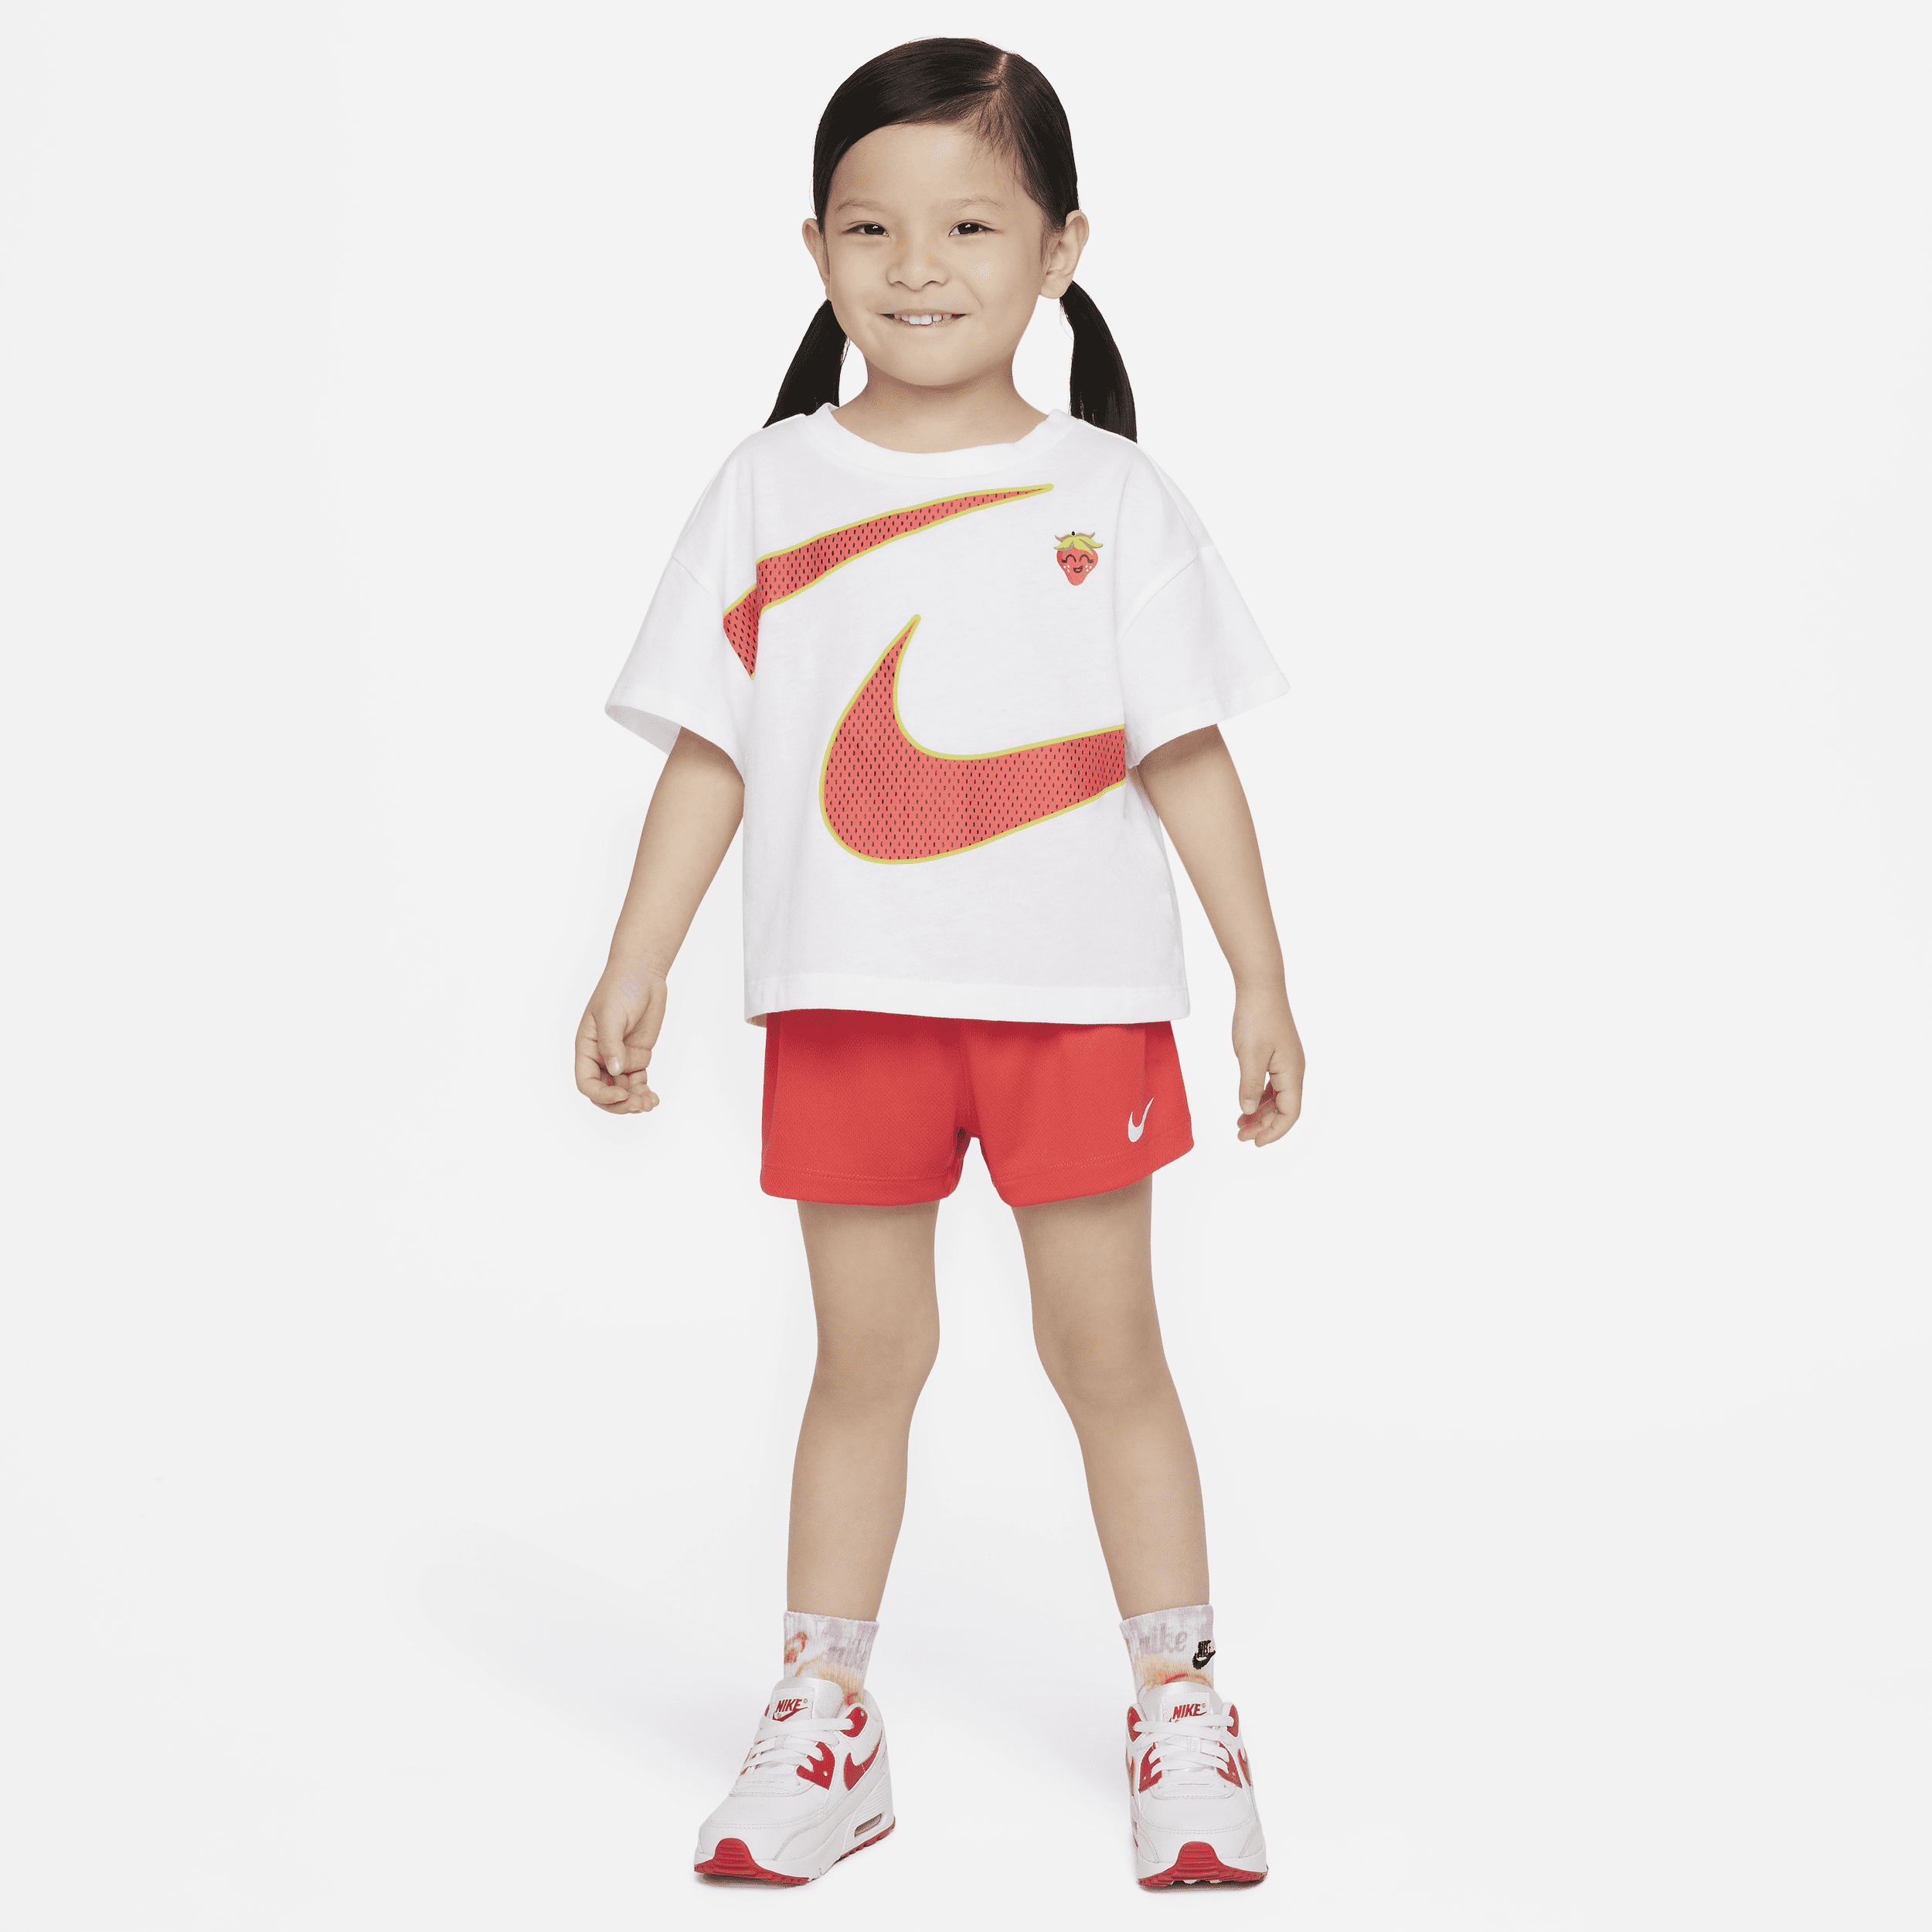 Completo t-shirt e shorts Nike – Bimbi piccoli - Rosso